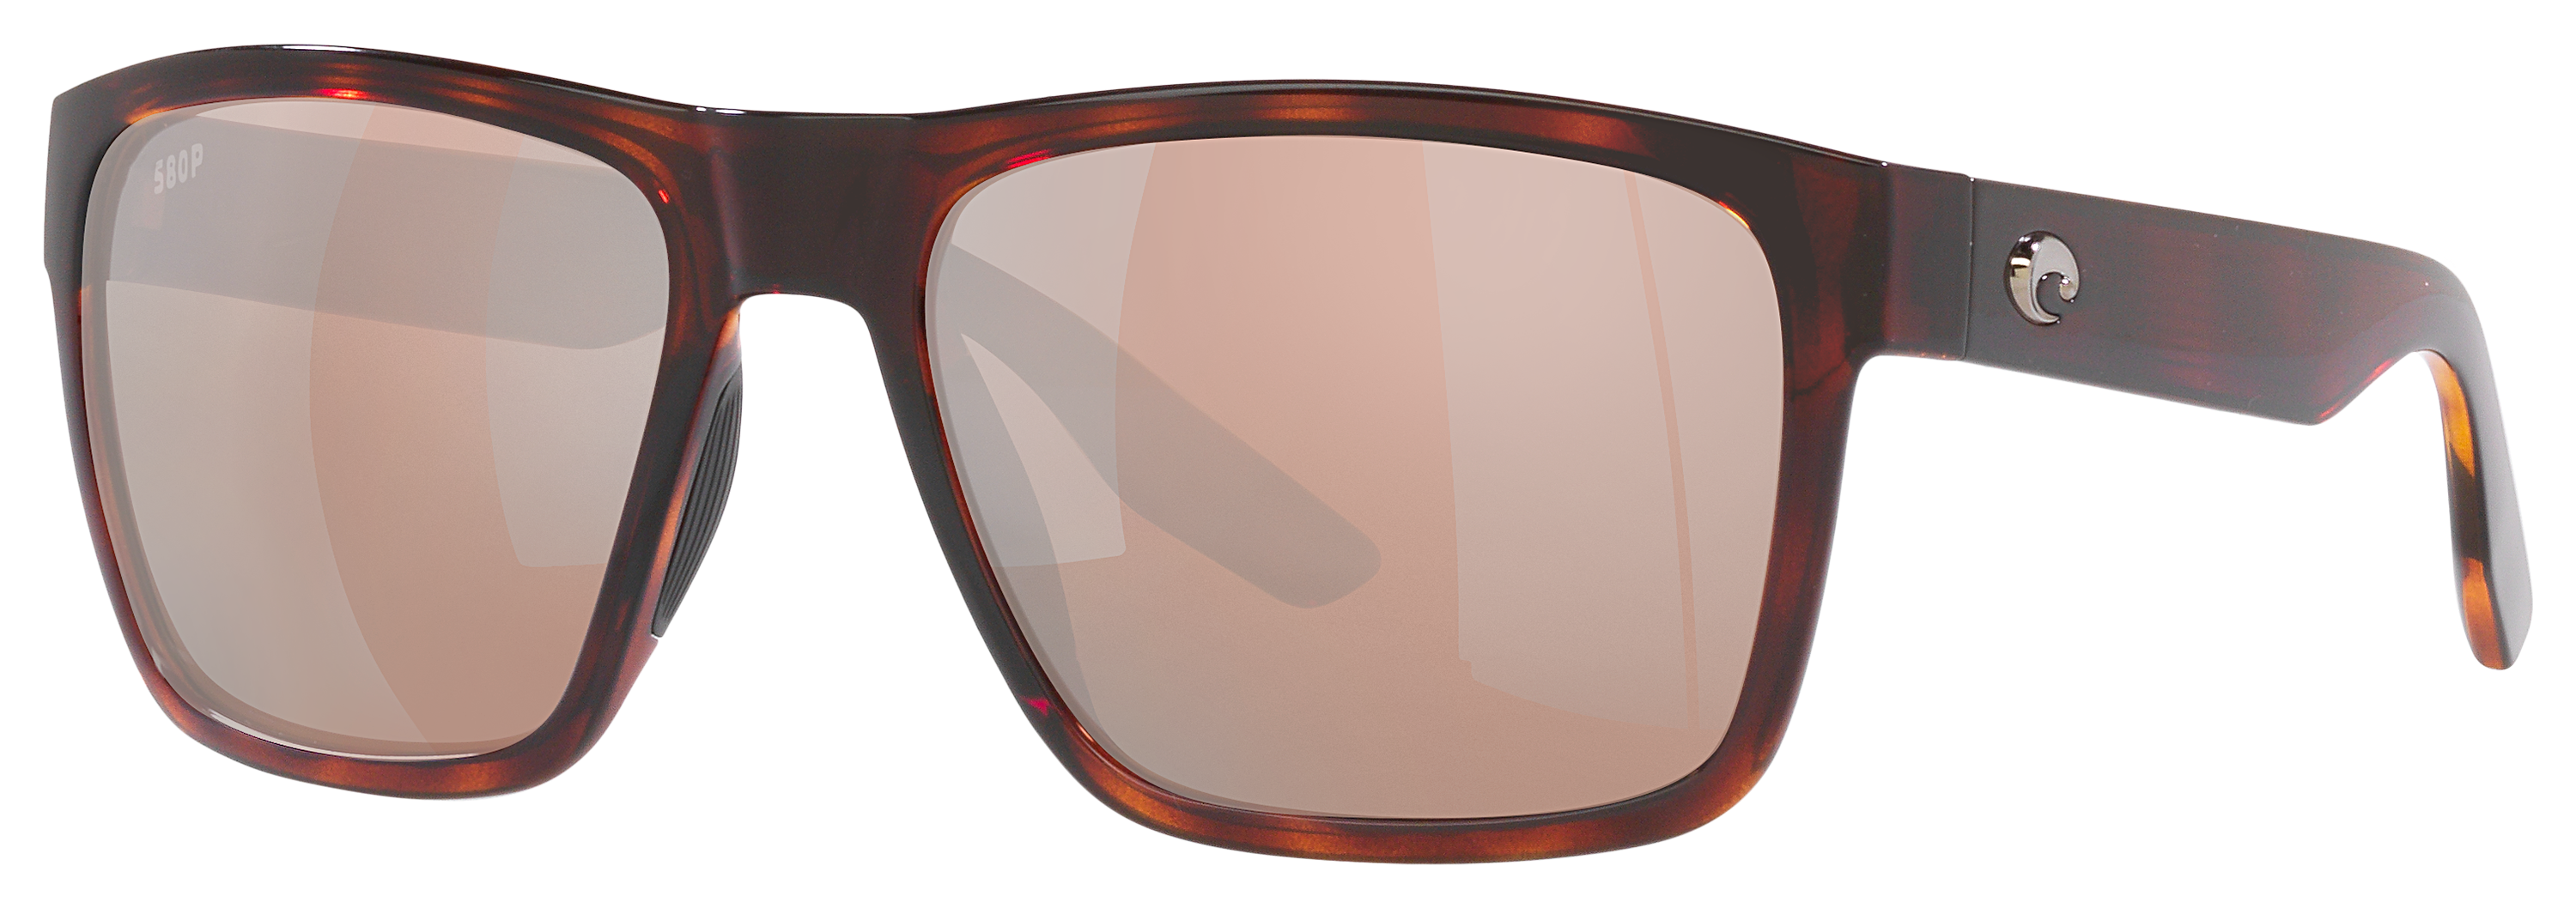 Costa Del Mar Paunch XL 580P Polarized Sunglasses